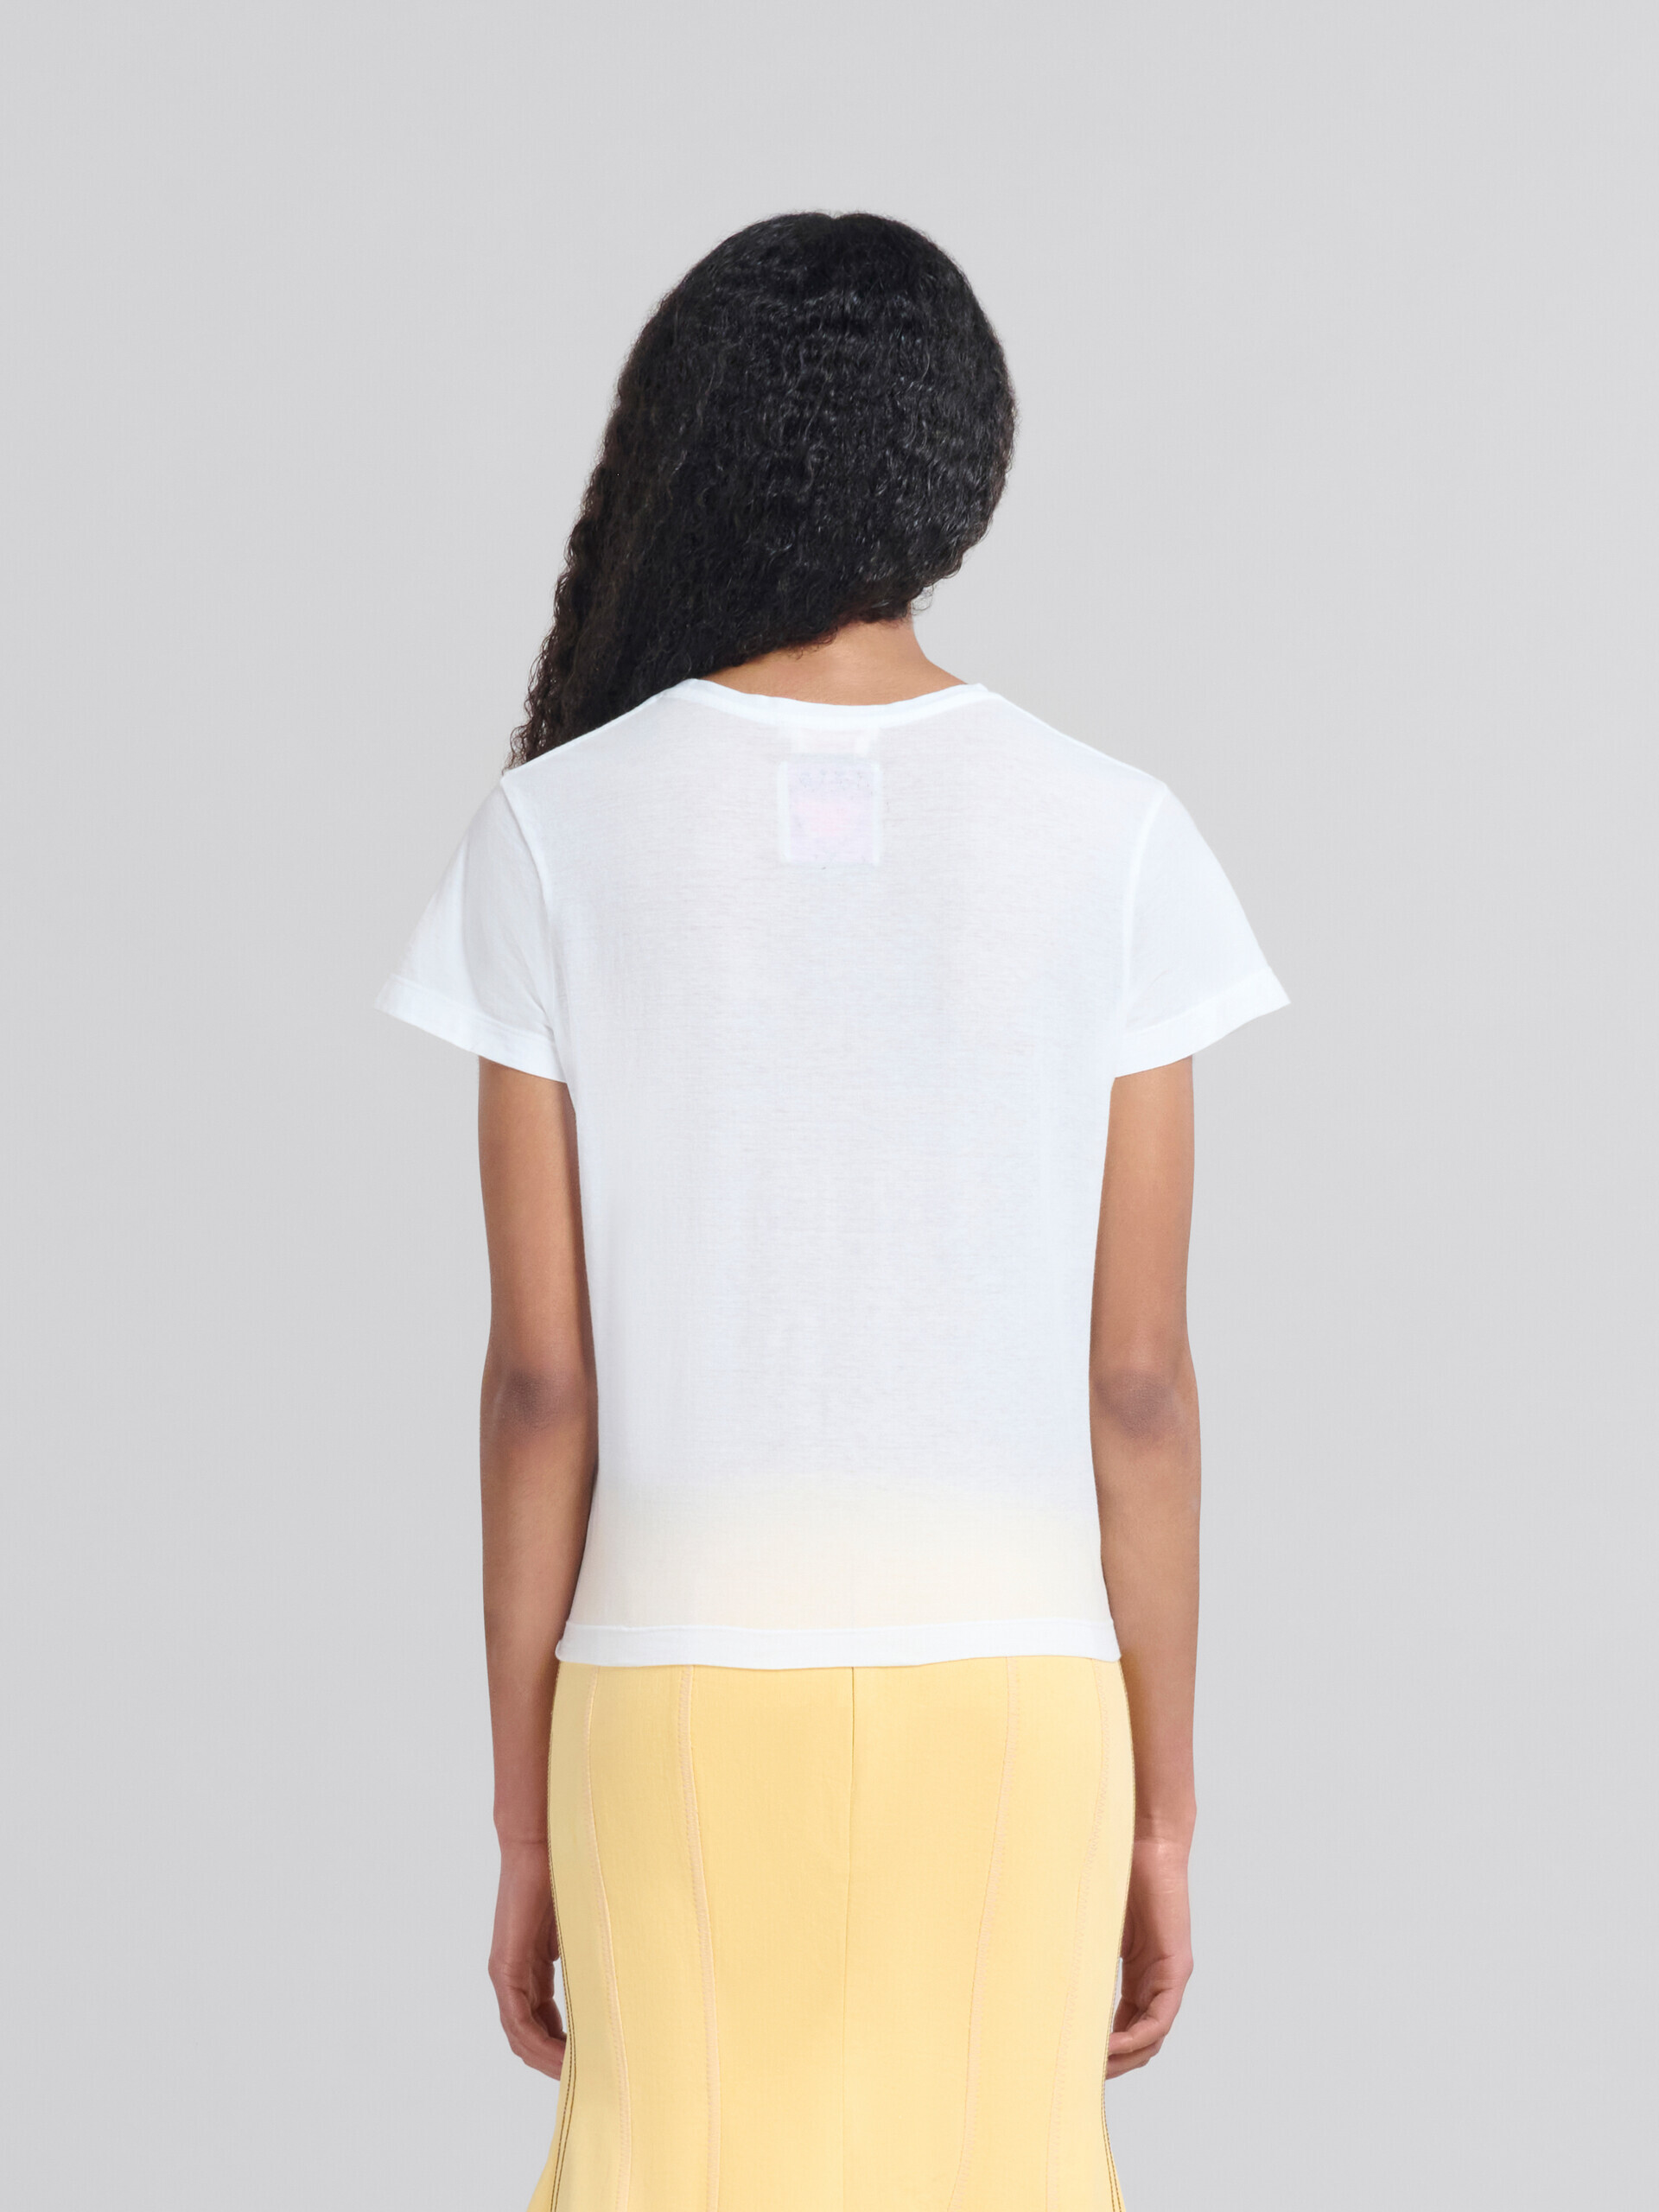 プリント入りホワイトのオーガニックジャージー製スリムフィットTシャツ - Tシャツ - Image 3